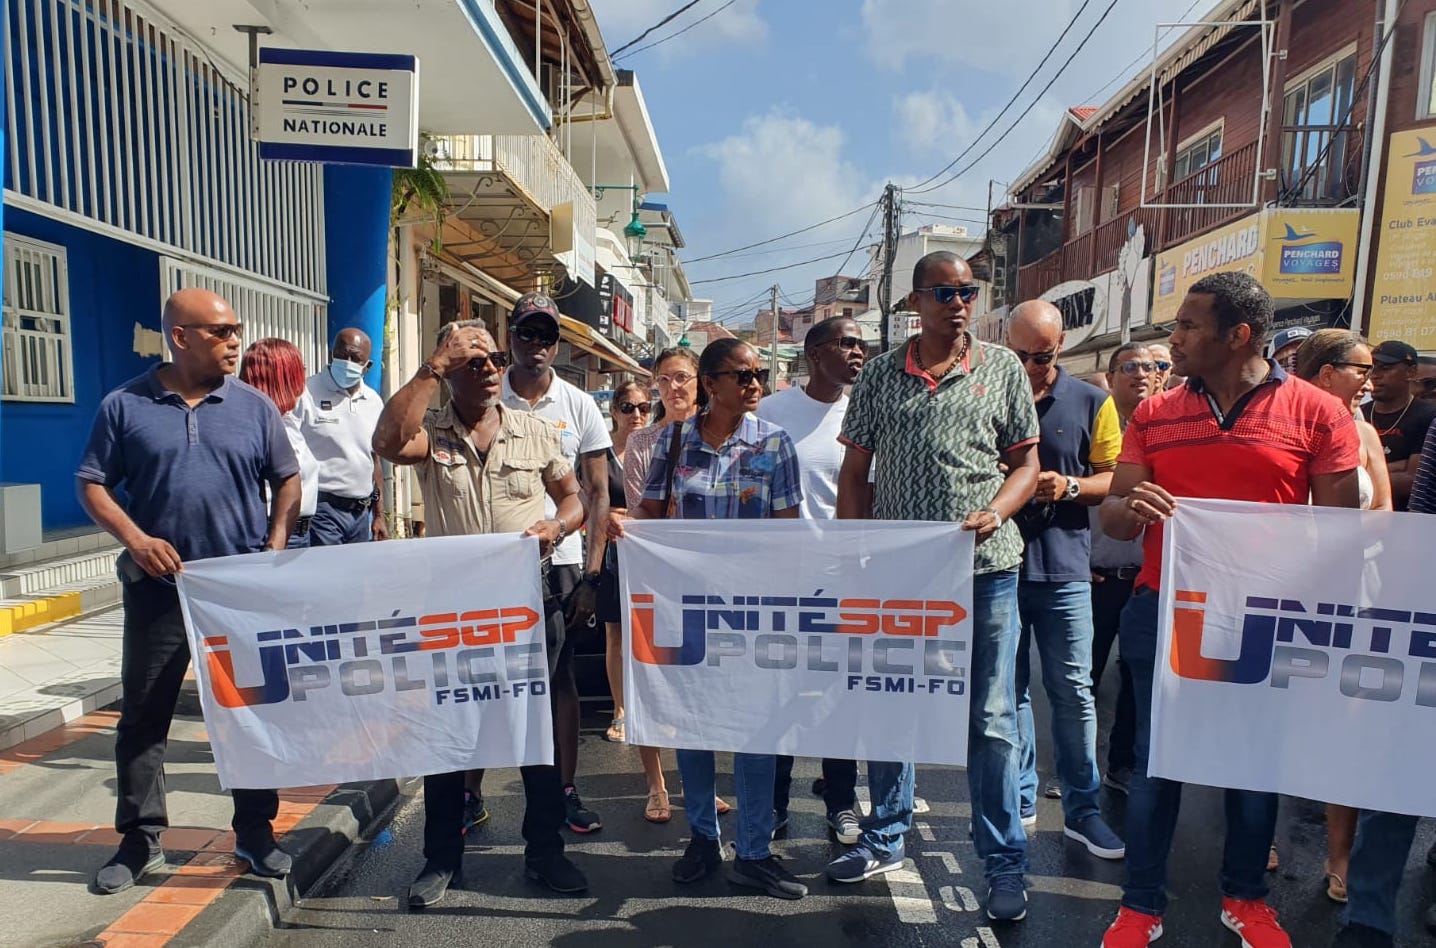     Basse-Terre : policiers et commerçants mobilisés contre l'insécurité

